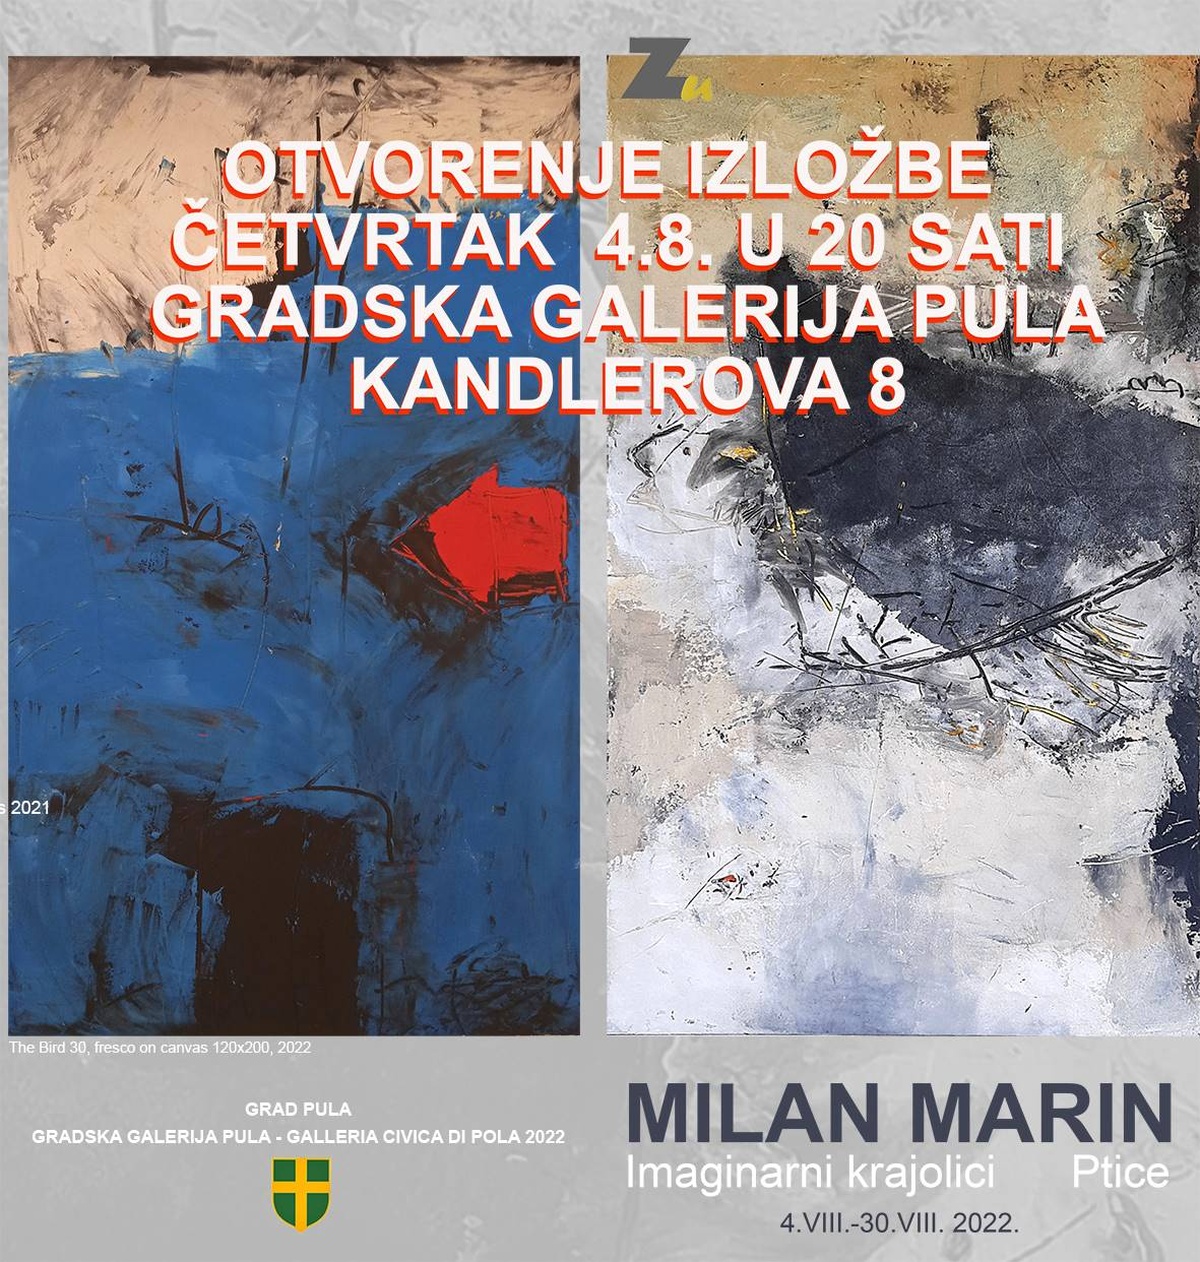 izložba Milan Marin